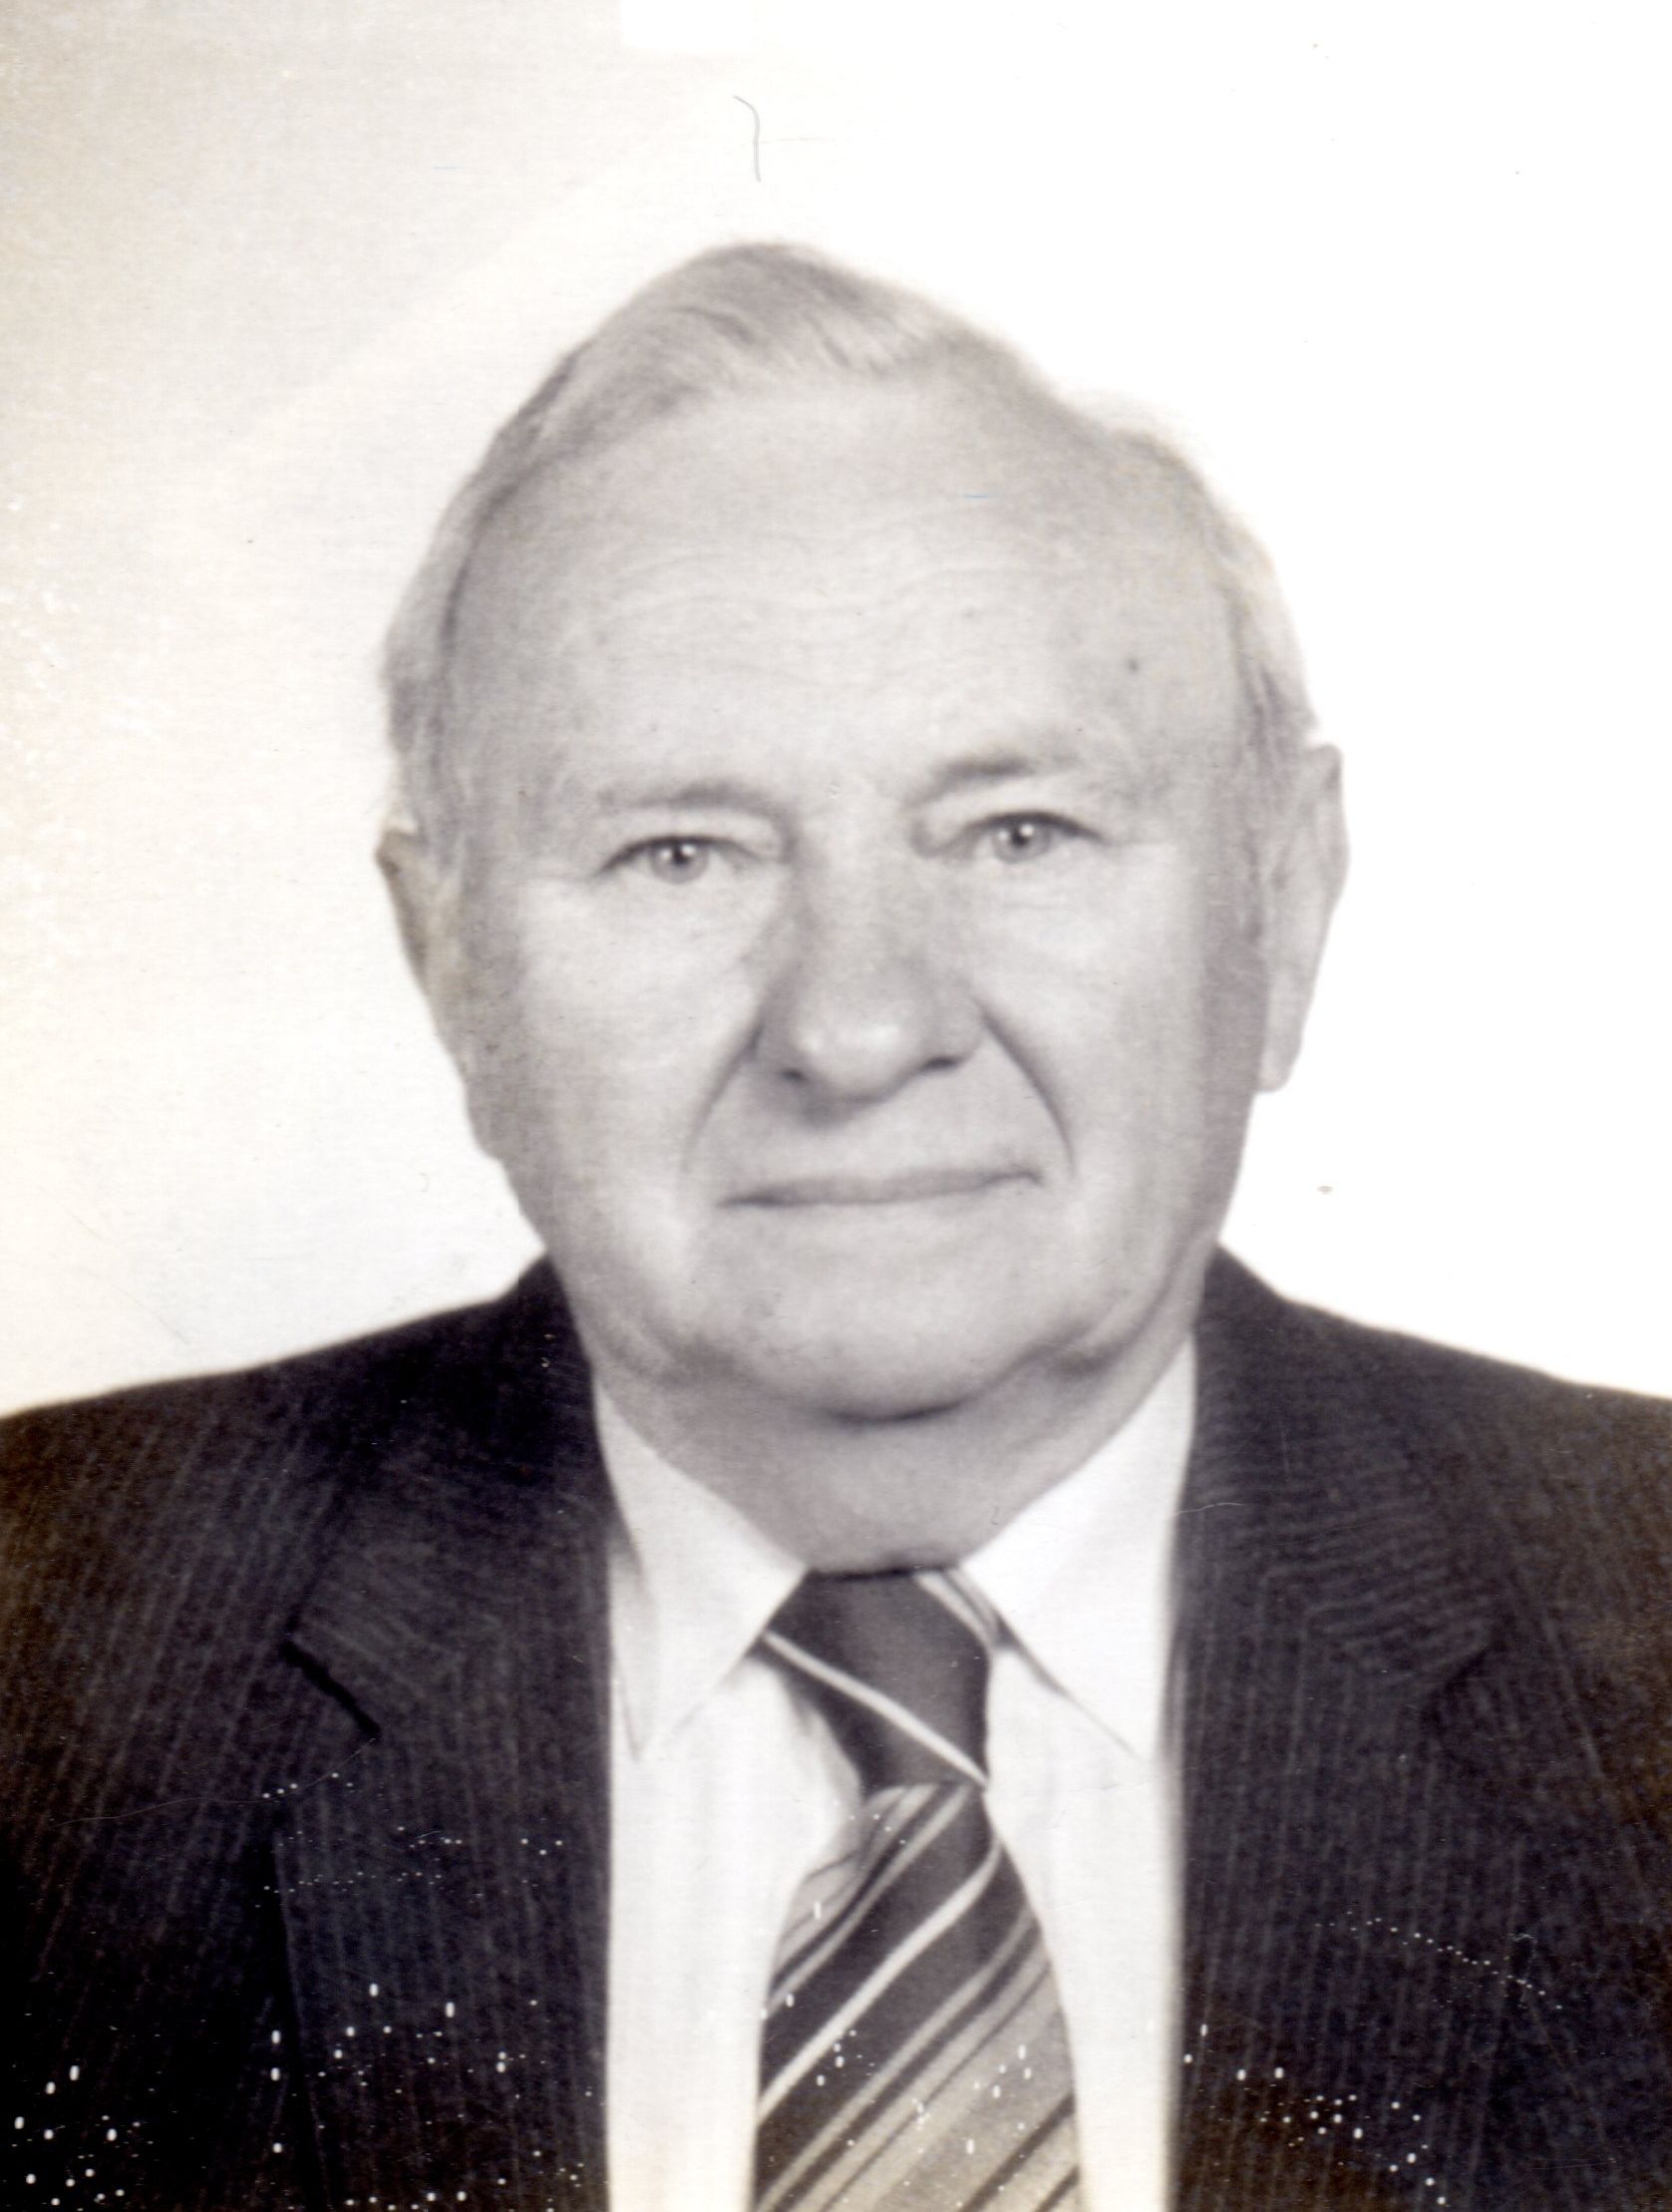 Dr. Krajcsovszki József pedagógus, főiskolai tanár, a Kecskeméti Tanítóképző Főiskola korábbi igazgatója